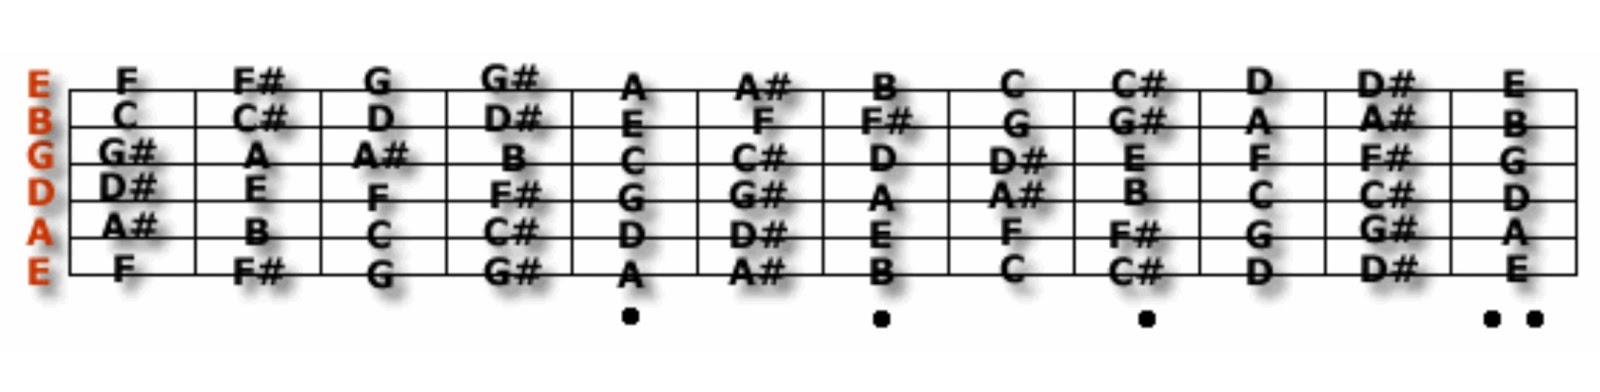 Первая струна гитары нота. Расположение нот на грифе бас гитары 4 струны. Ноты на бас гитаре 4 струны. Ноты на грифе бас гитары 6 струн. Расположение нот на грифе бас гитары.